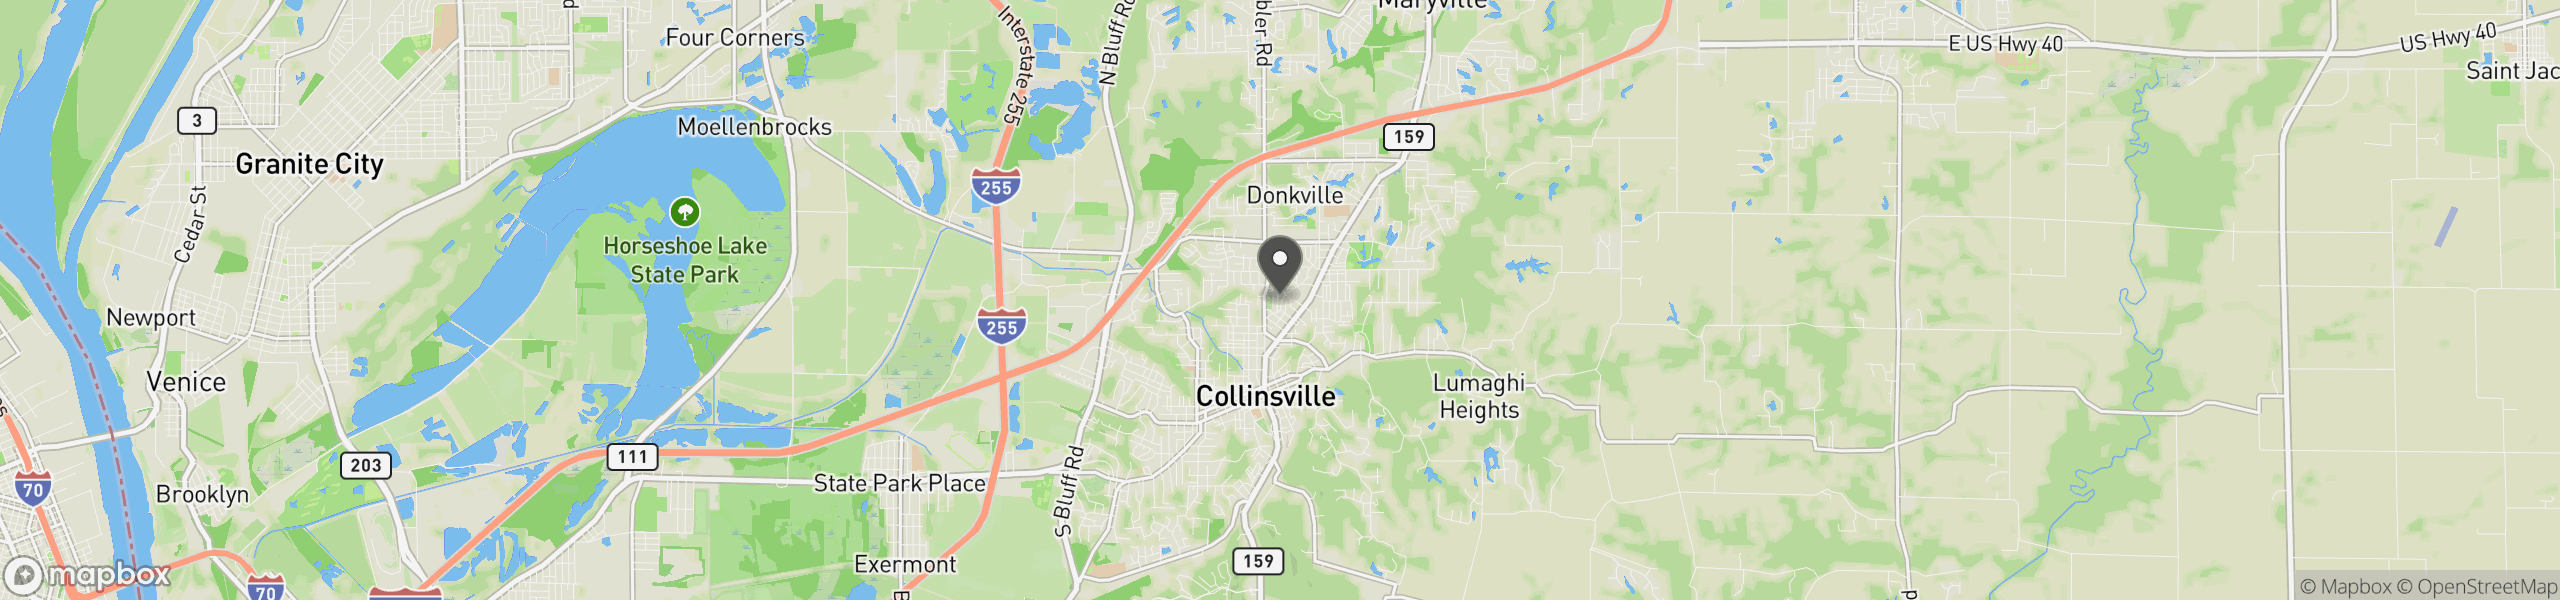 Collinsville, IL